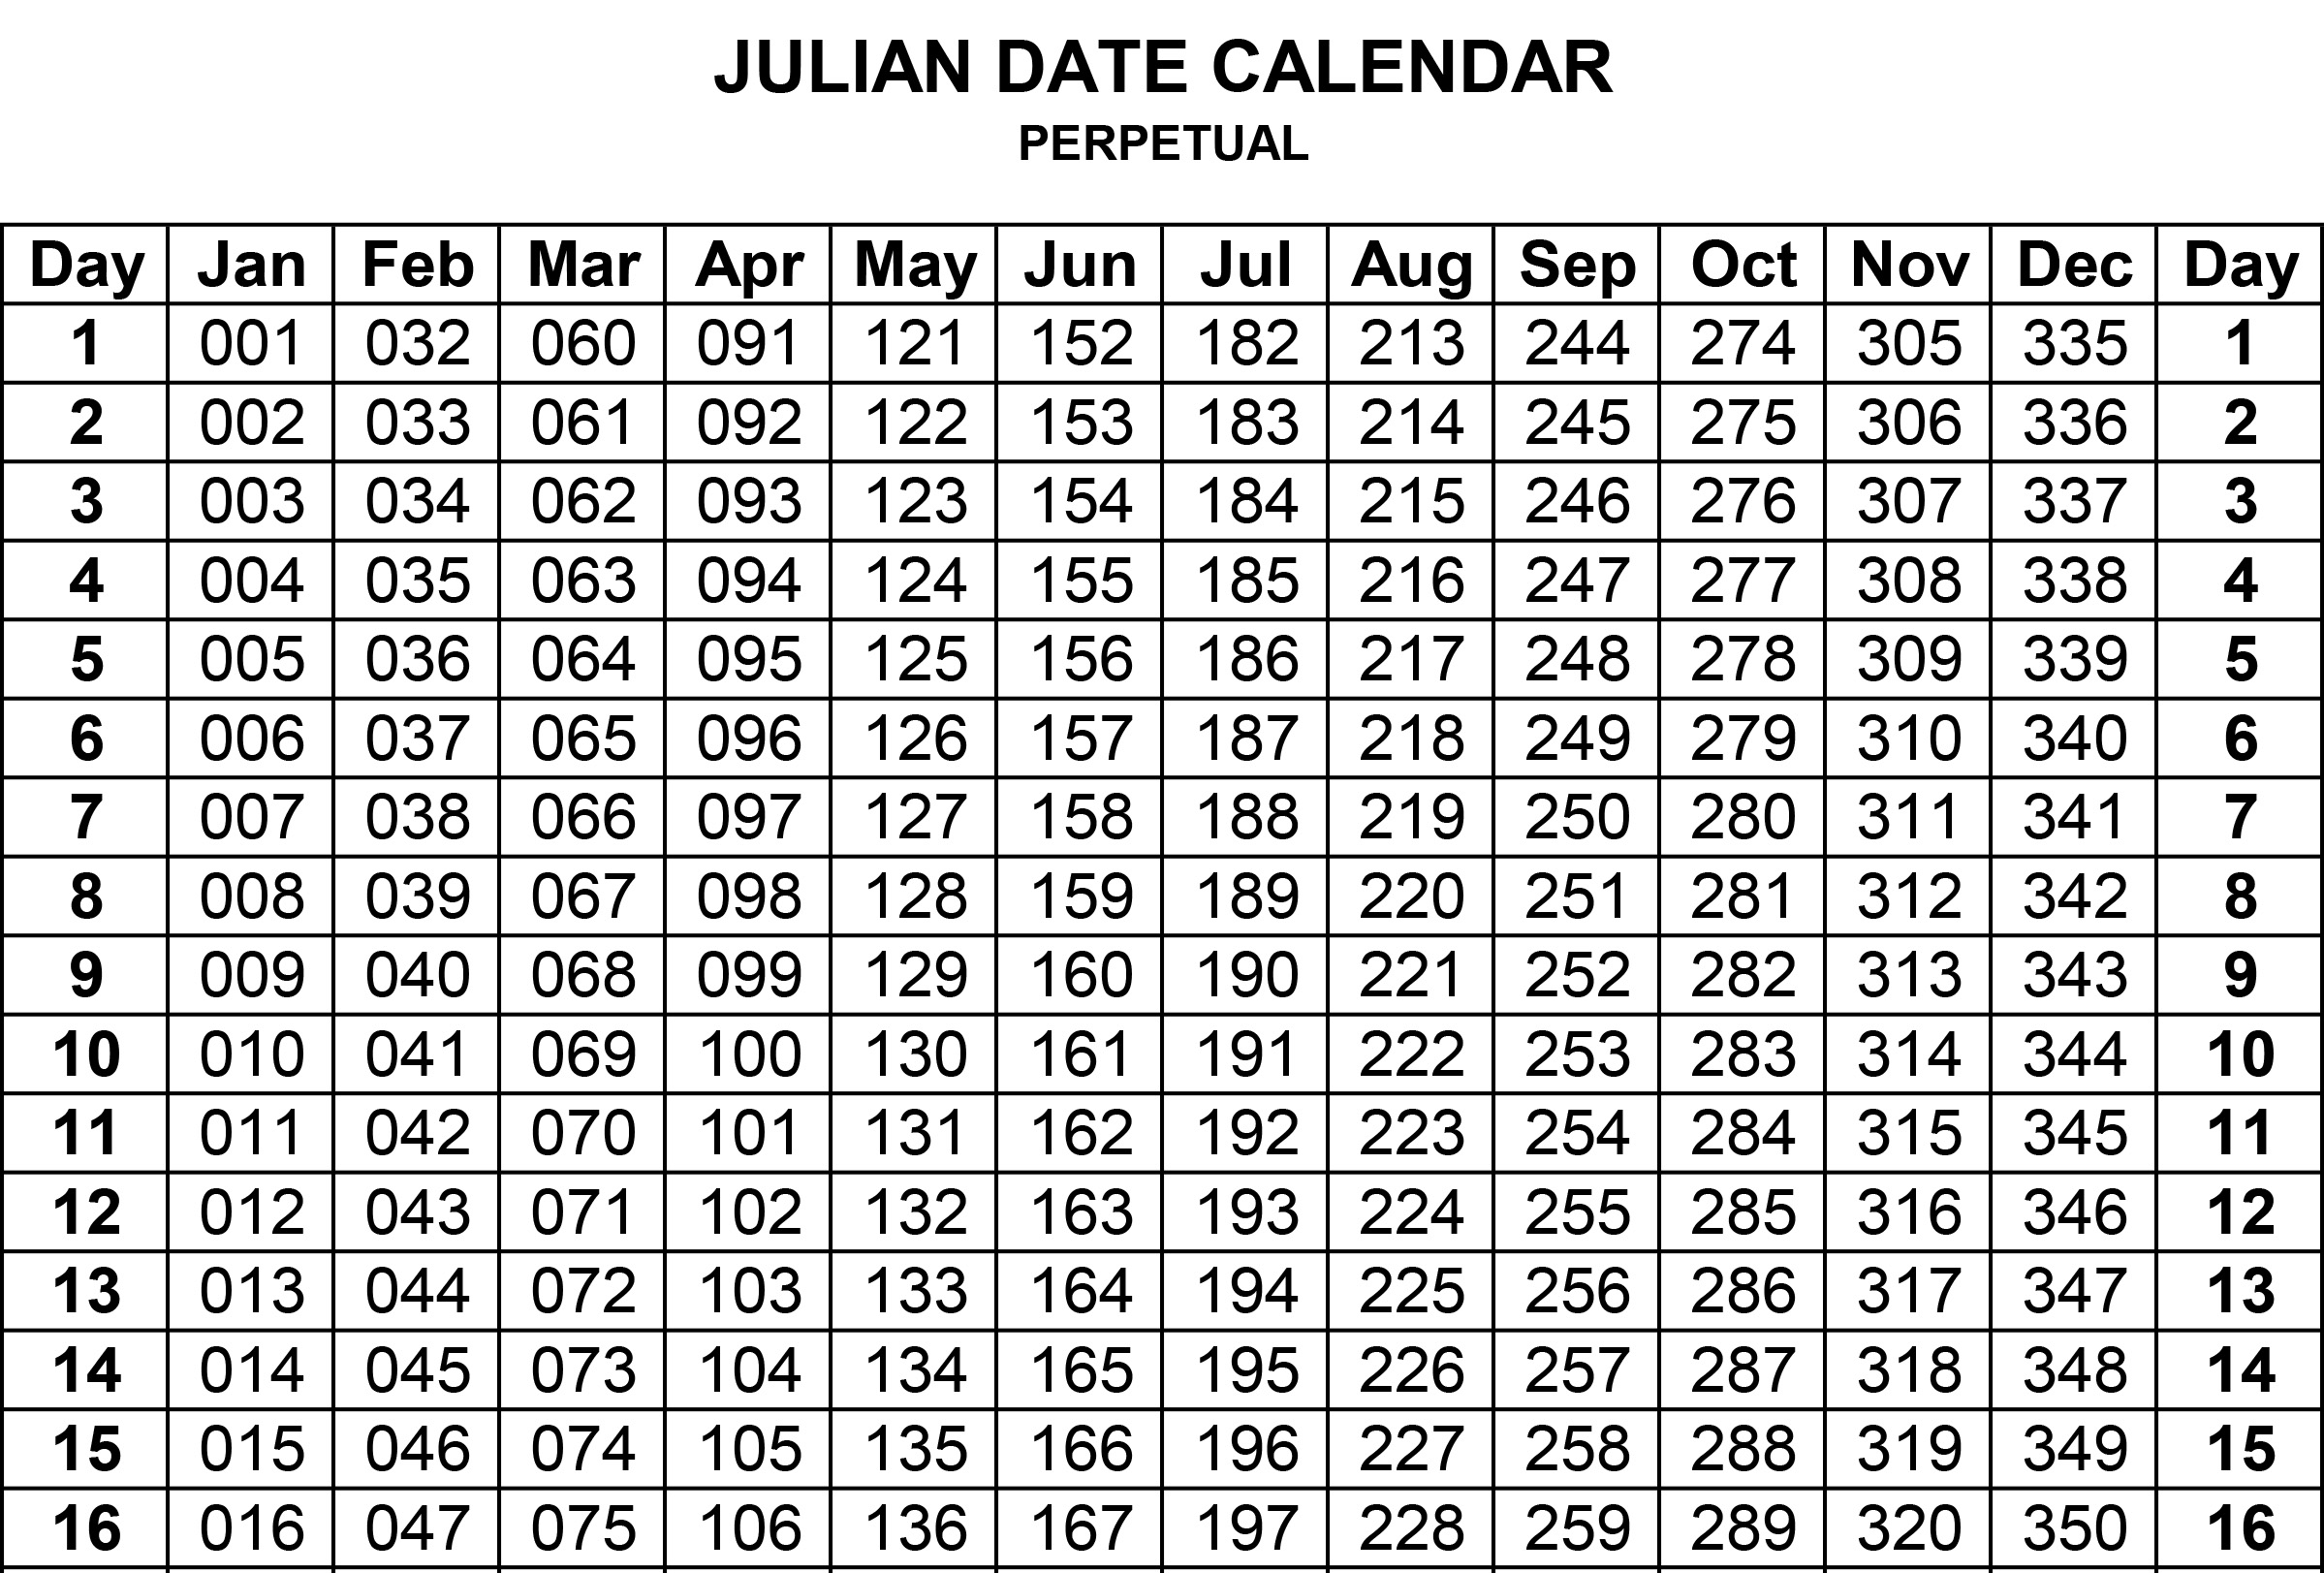 julian calendar